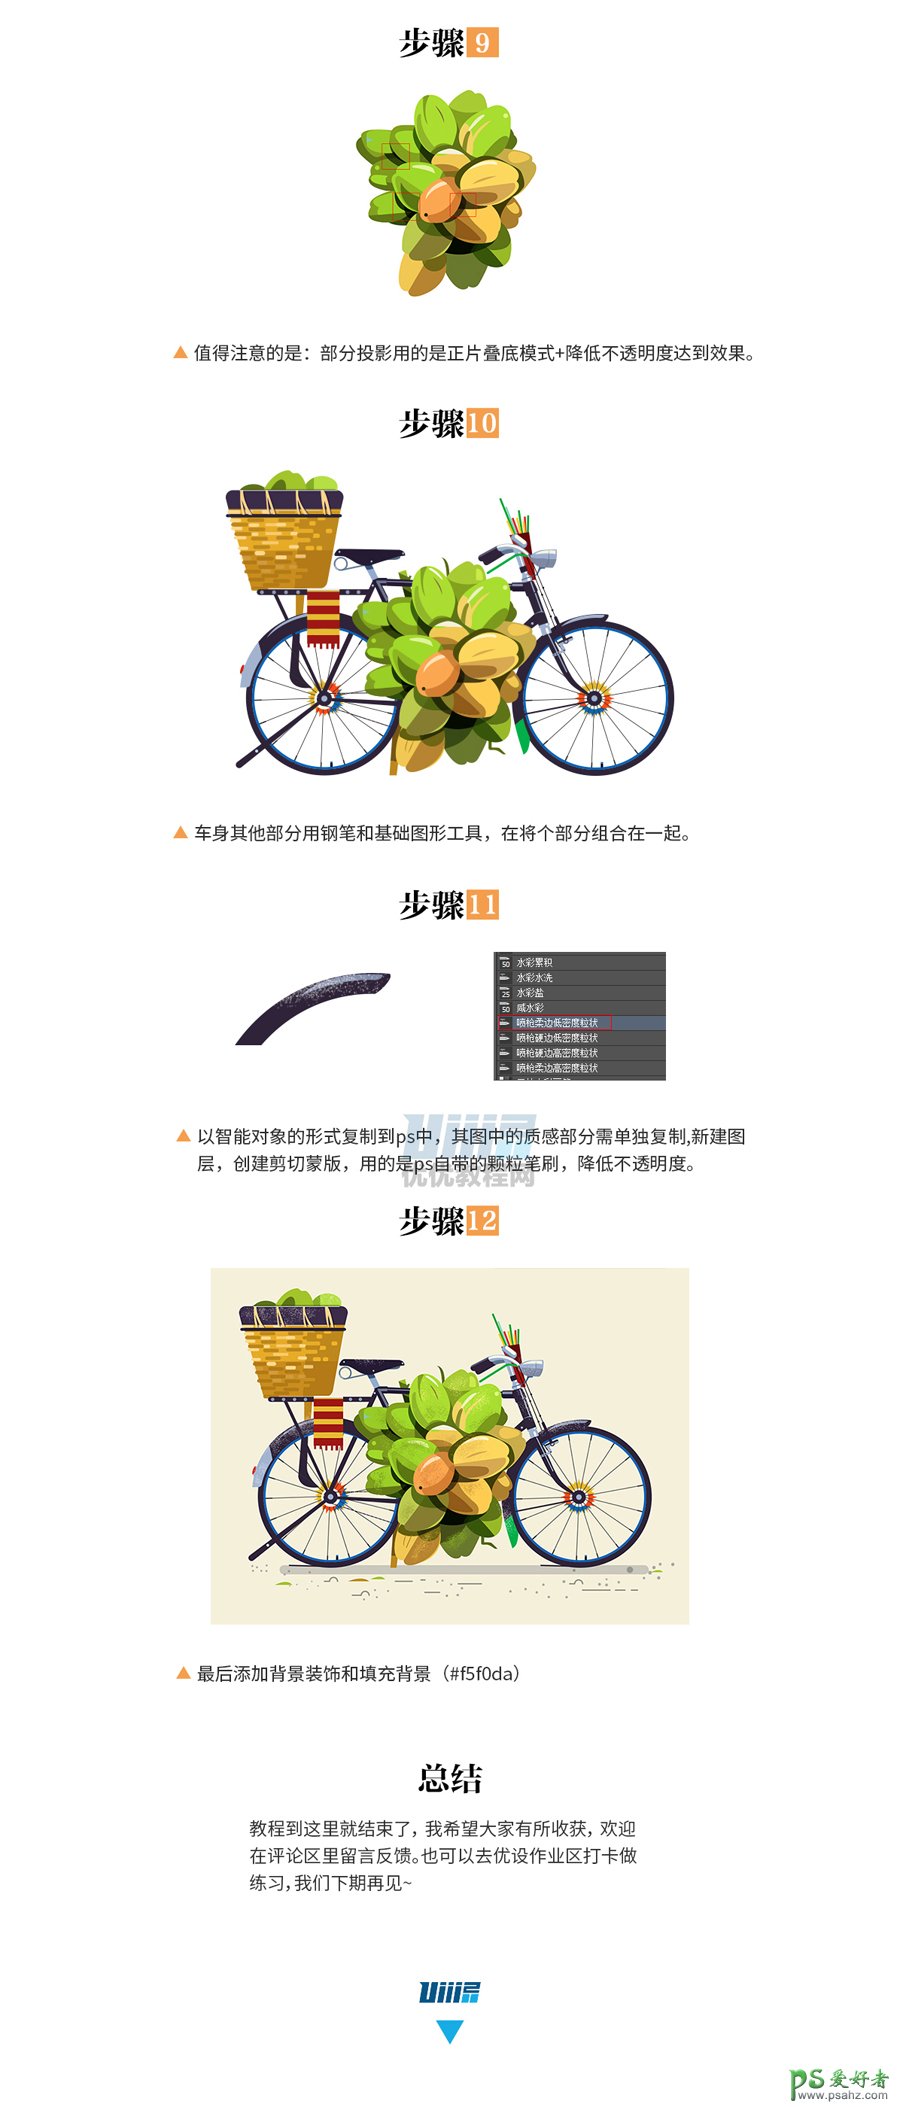 PS结合AI软件绘制漂亮的自行车插画图片，绘制质感自行车素材图。